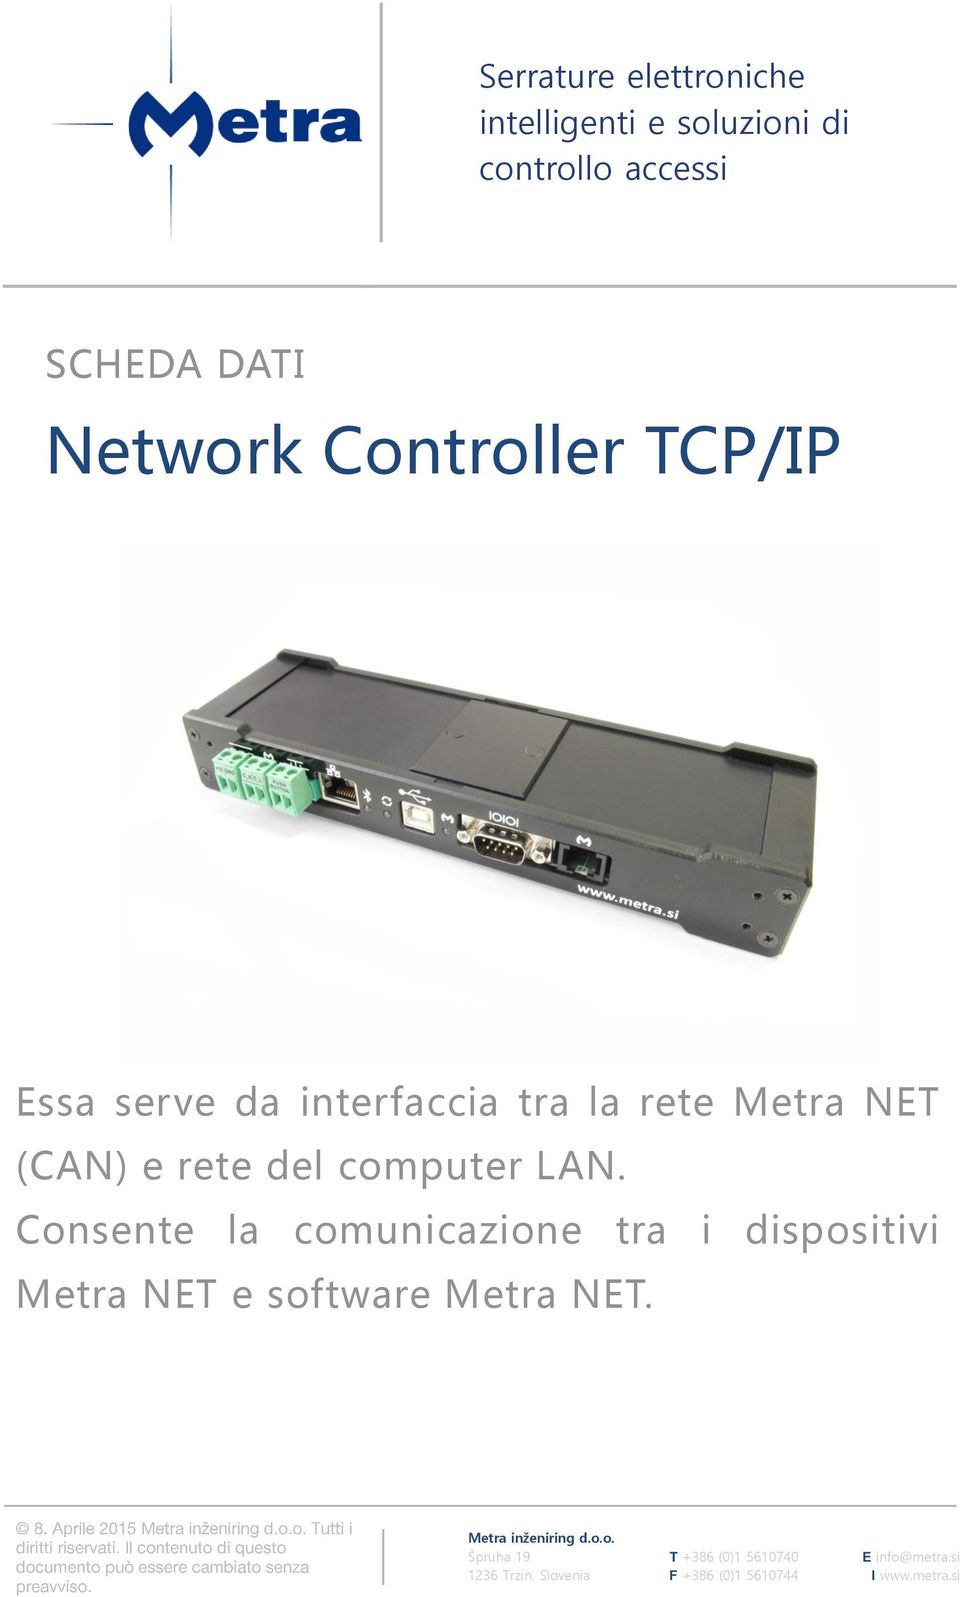 interfaccia tra la rete Metra NET (CAN) e rete del computer LAN.